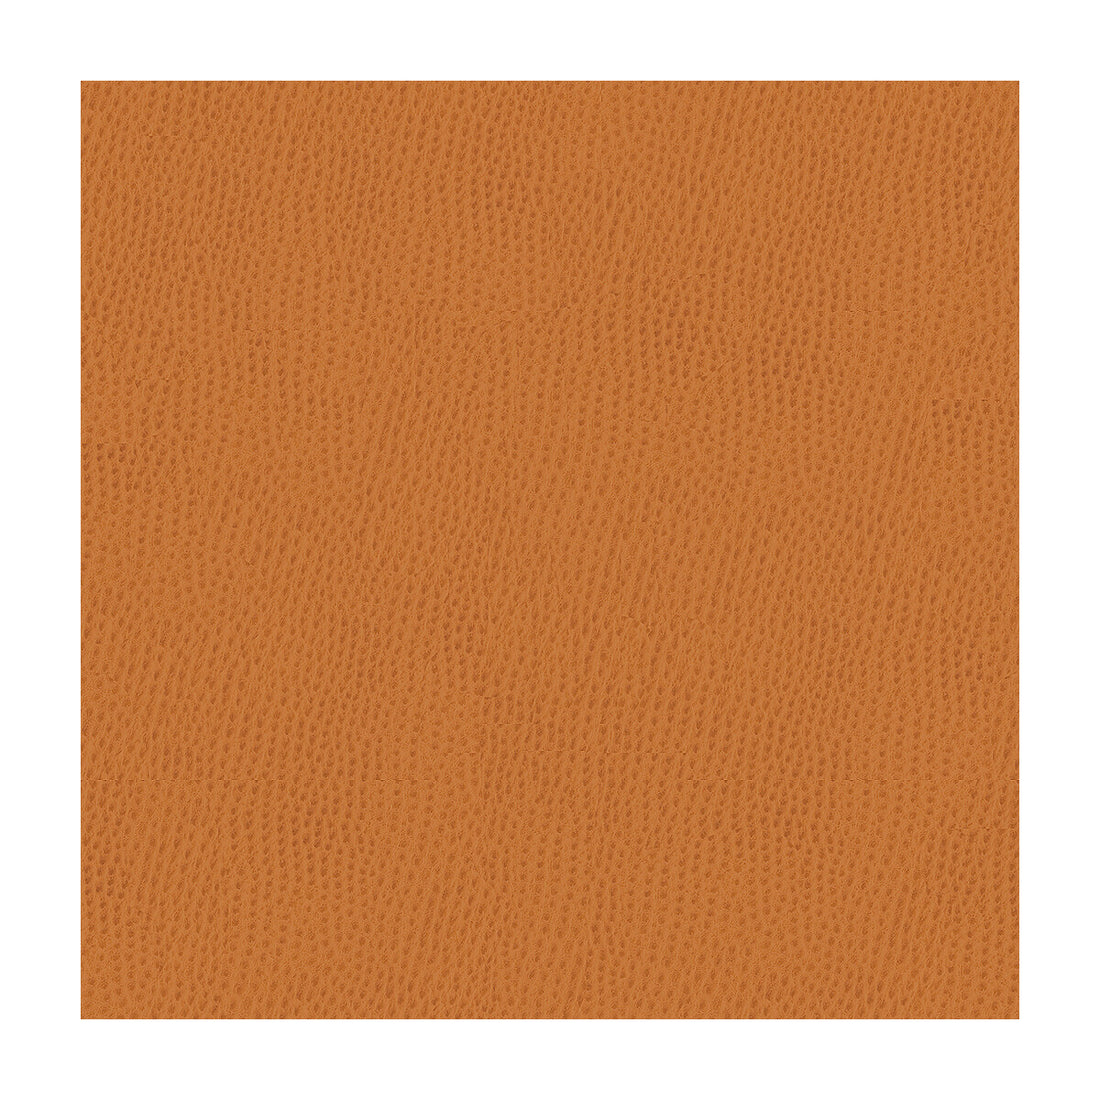 Kravet Smart fabric in ossy-212 color - pattern OSSY.212.0 - by Kravet Smart